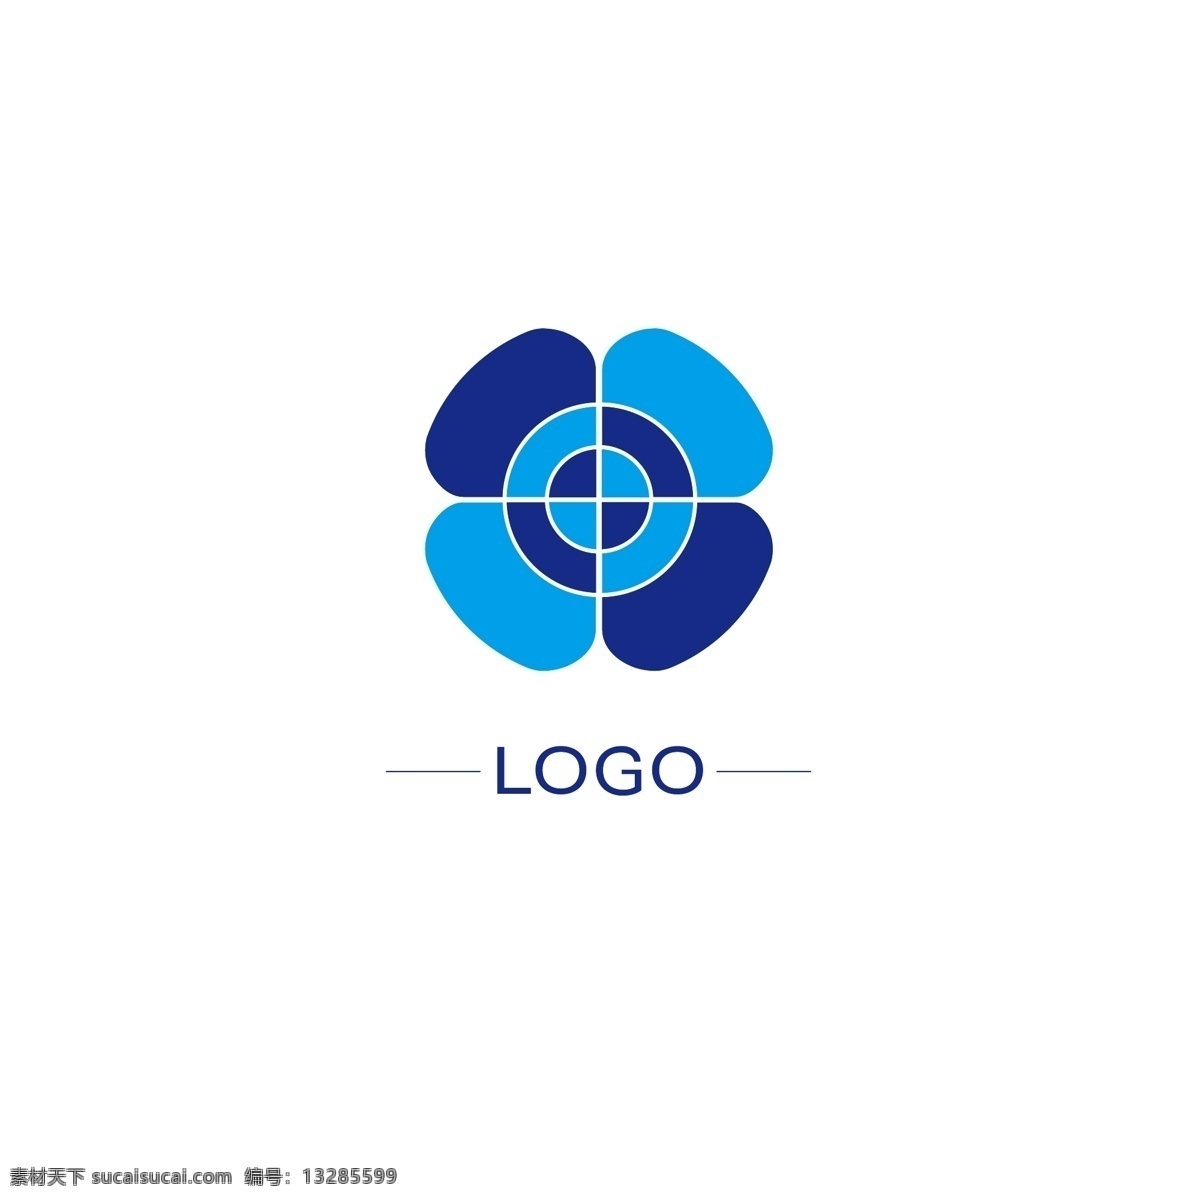 原创 logo 企业 品牌 标识设计 标识 集团 简约 ai矢量